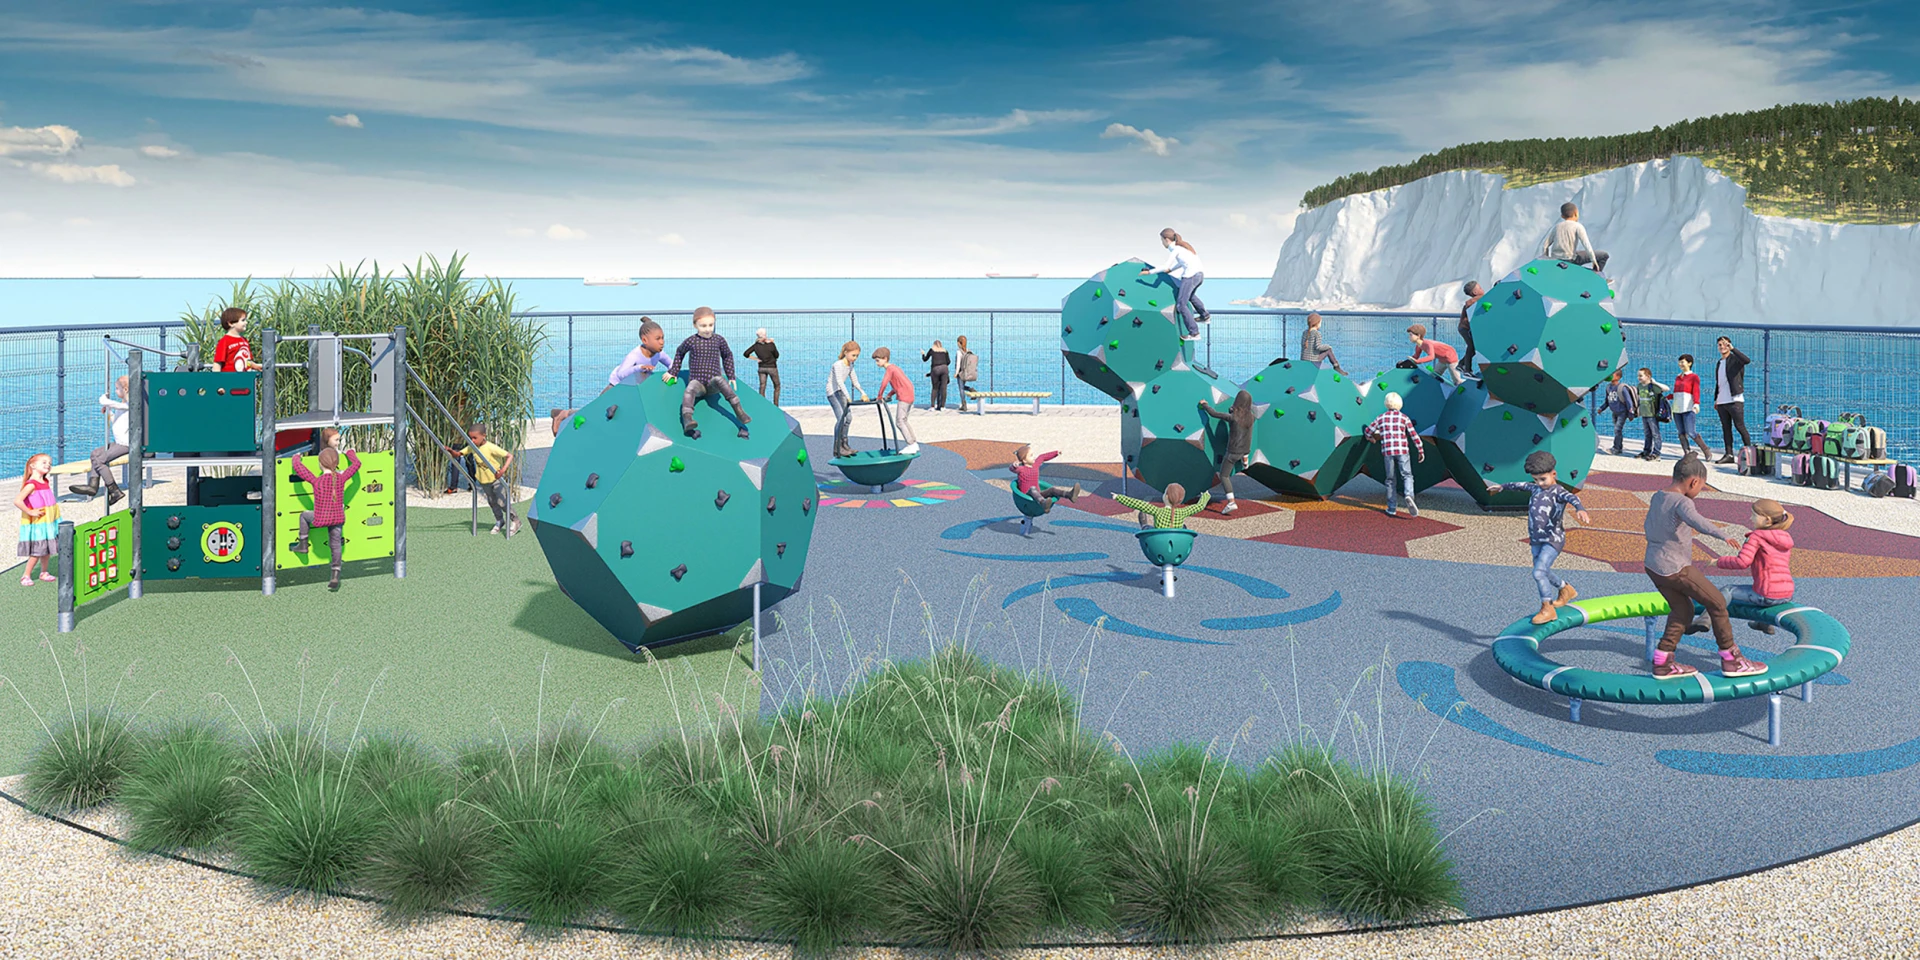 Designidee für einen CO₂-armen Spielplatz für Schulkinder